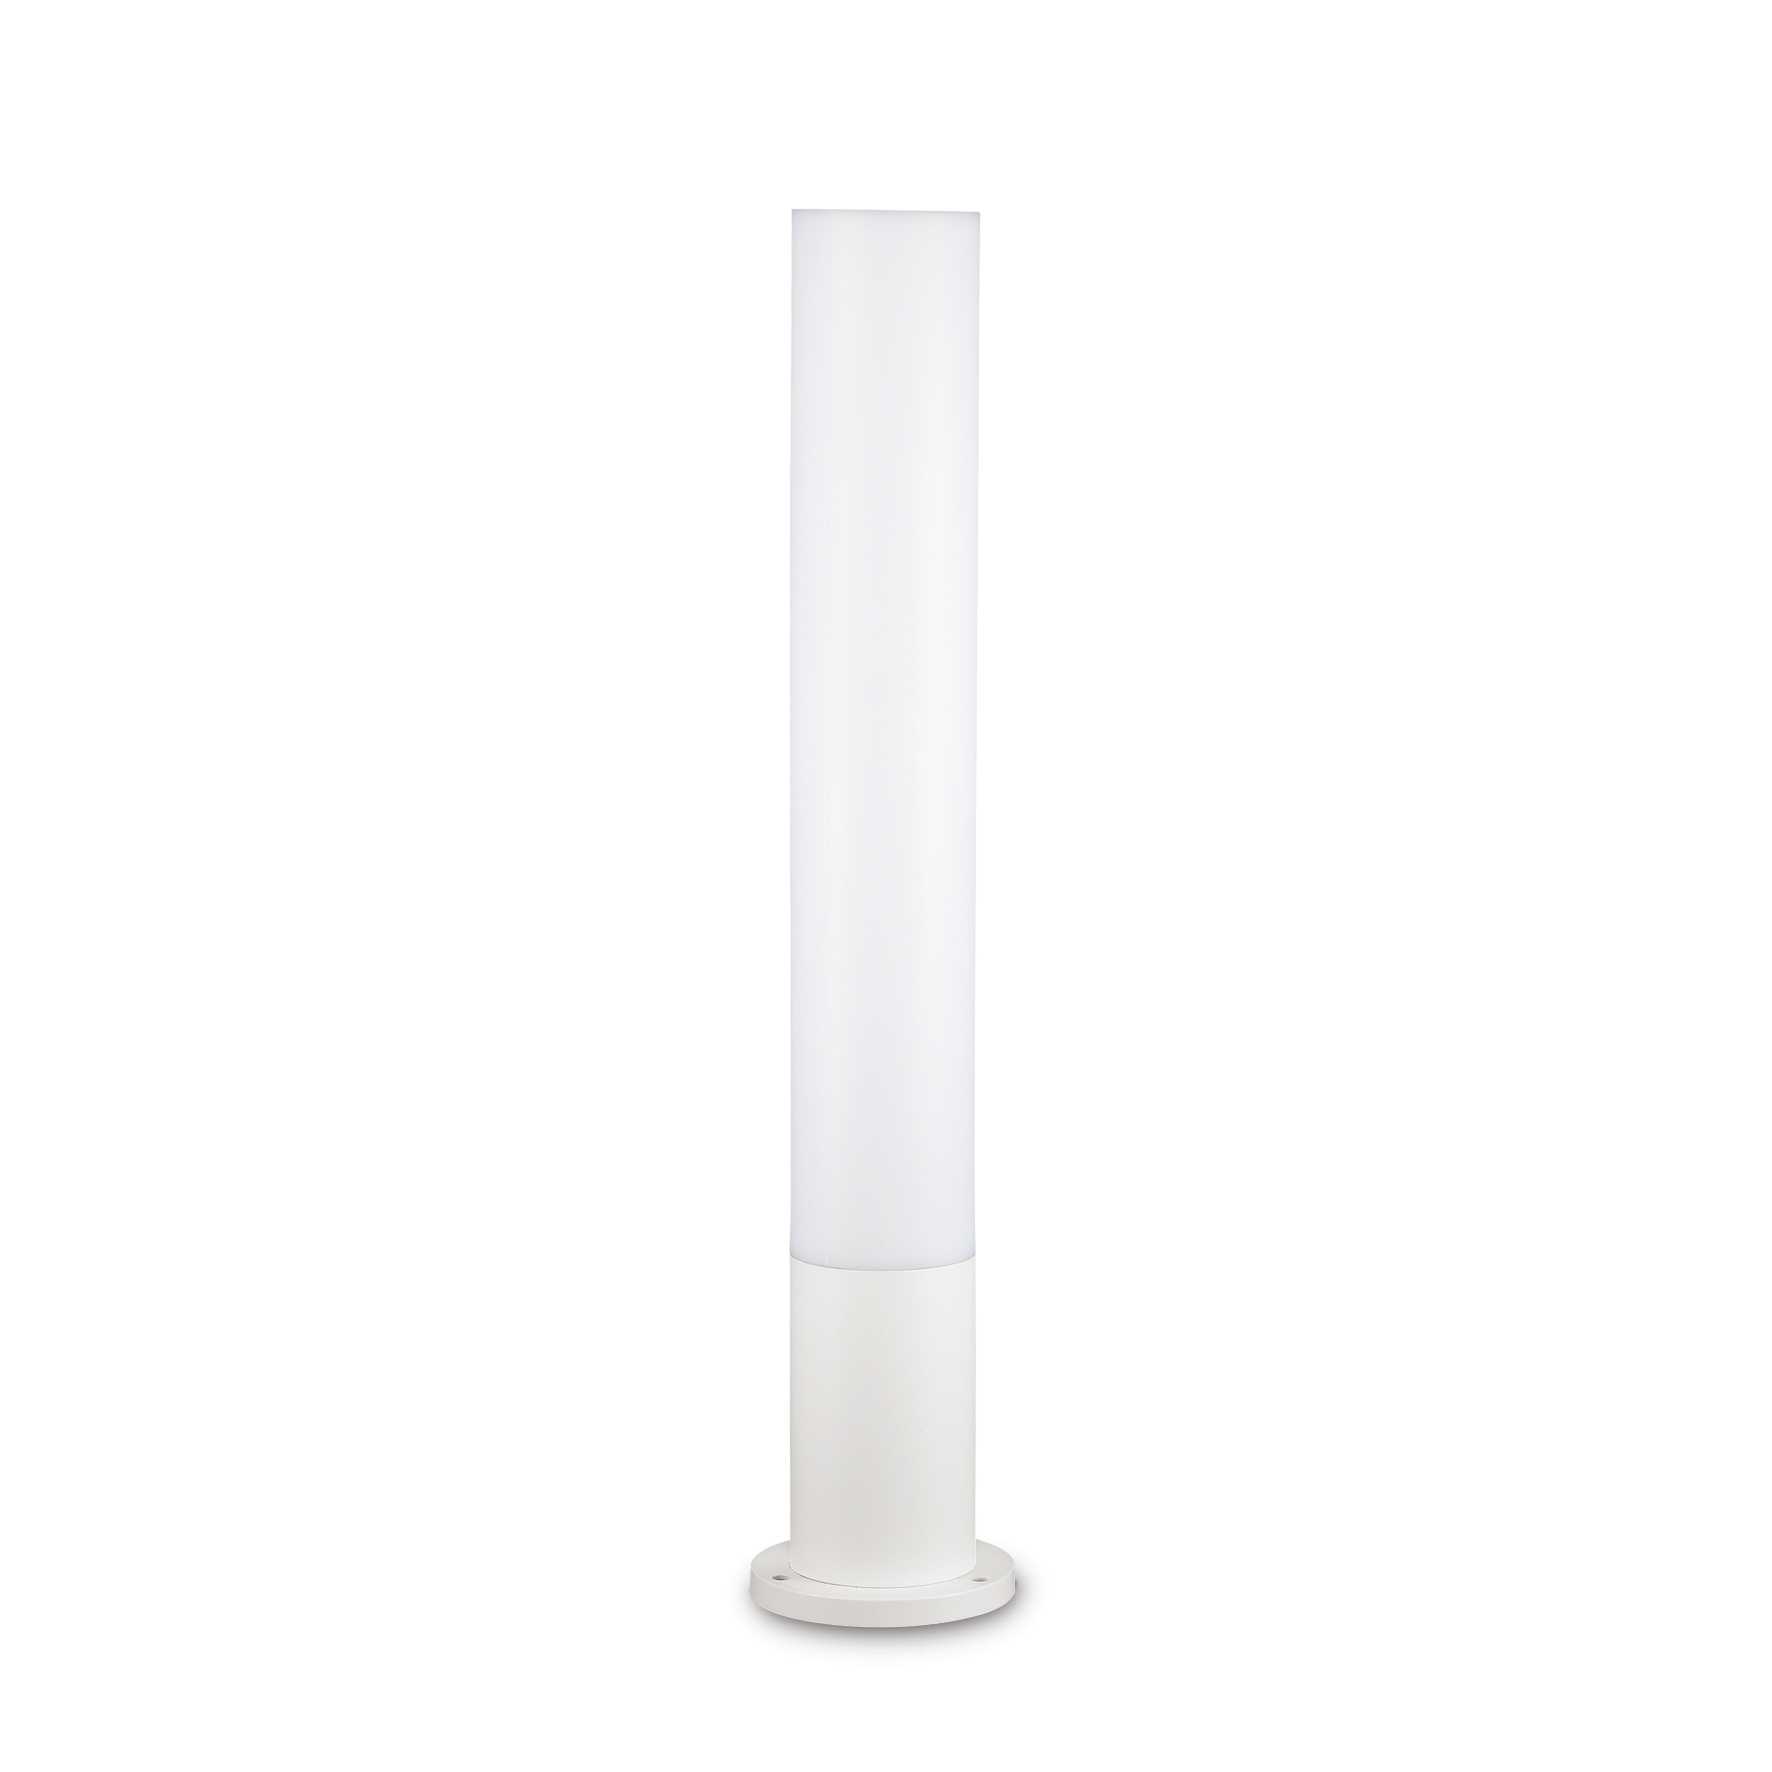 AD hotelska oprema Vanjska podna lampa  Edo outdoor pt1 (okrugla)- Bijele boje slika proizvoda